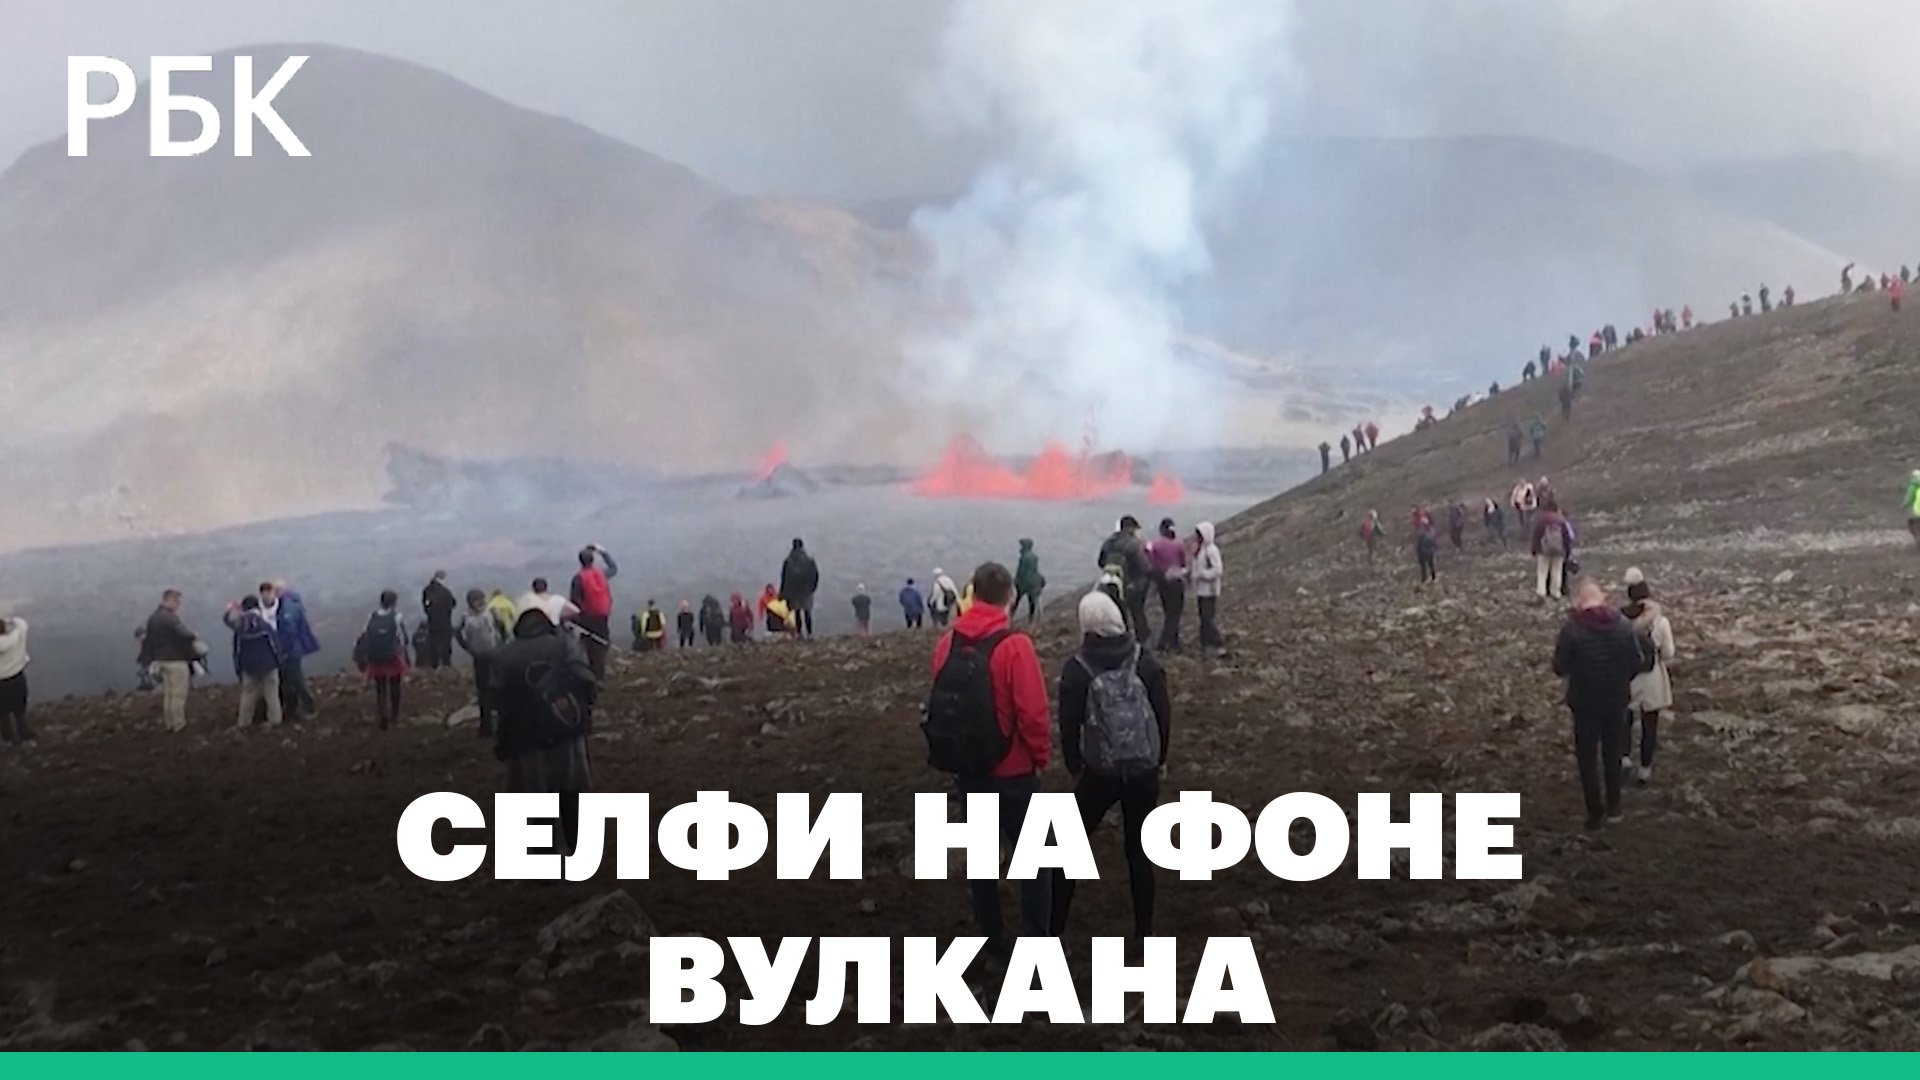 «Страшно и круто»: тысячи туристов посетили извергающийся вулкан в Исландии. Видео